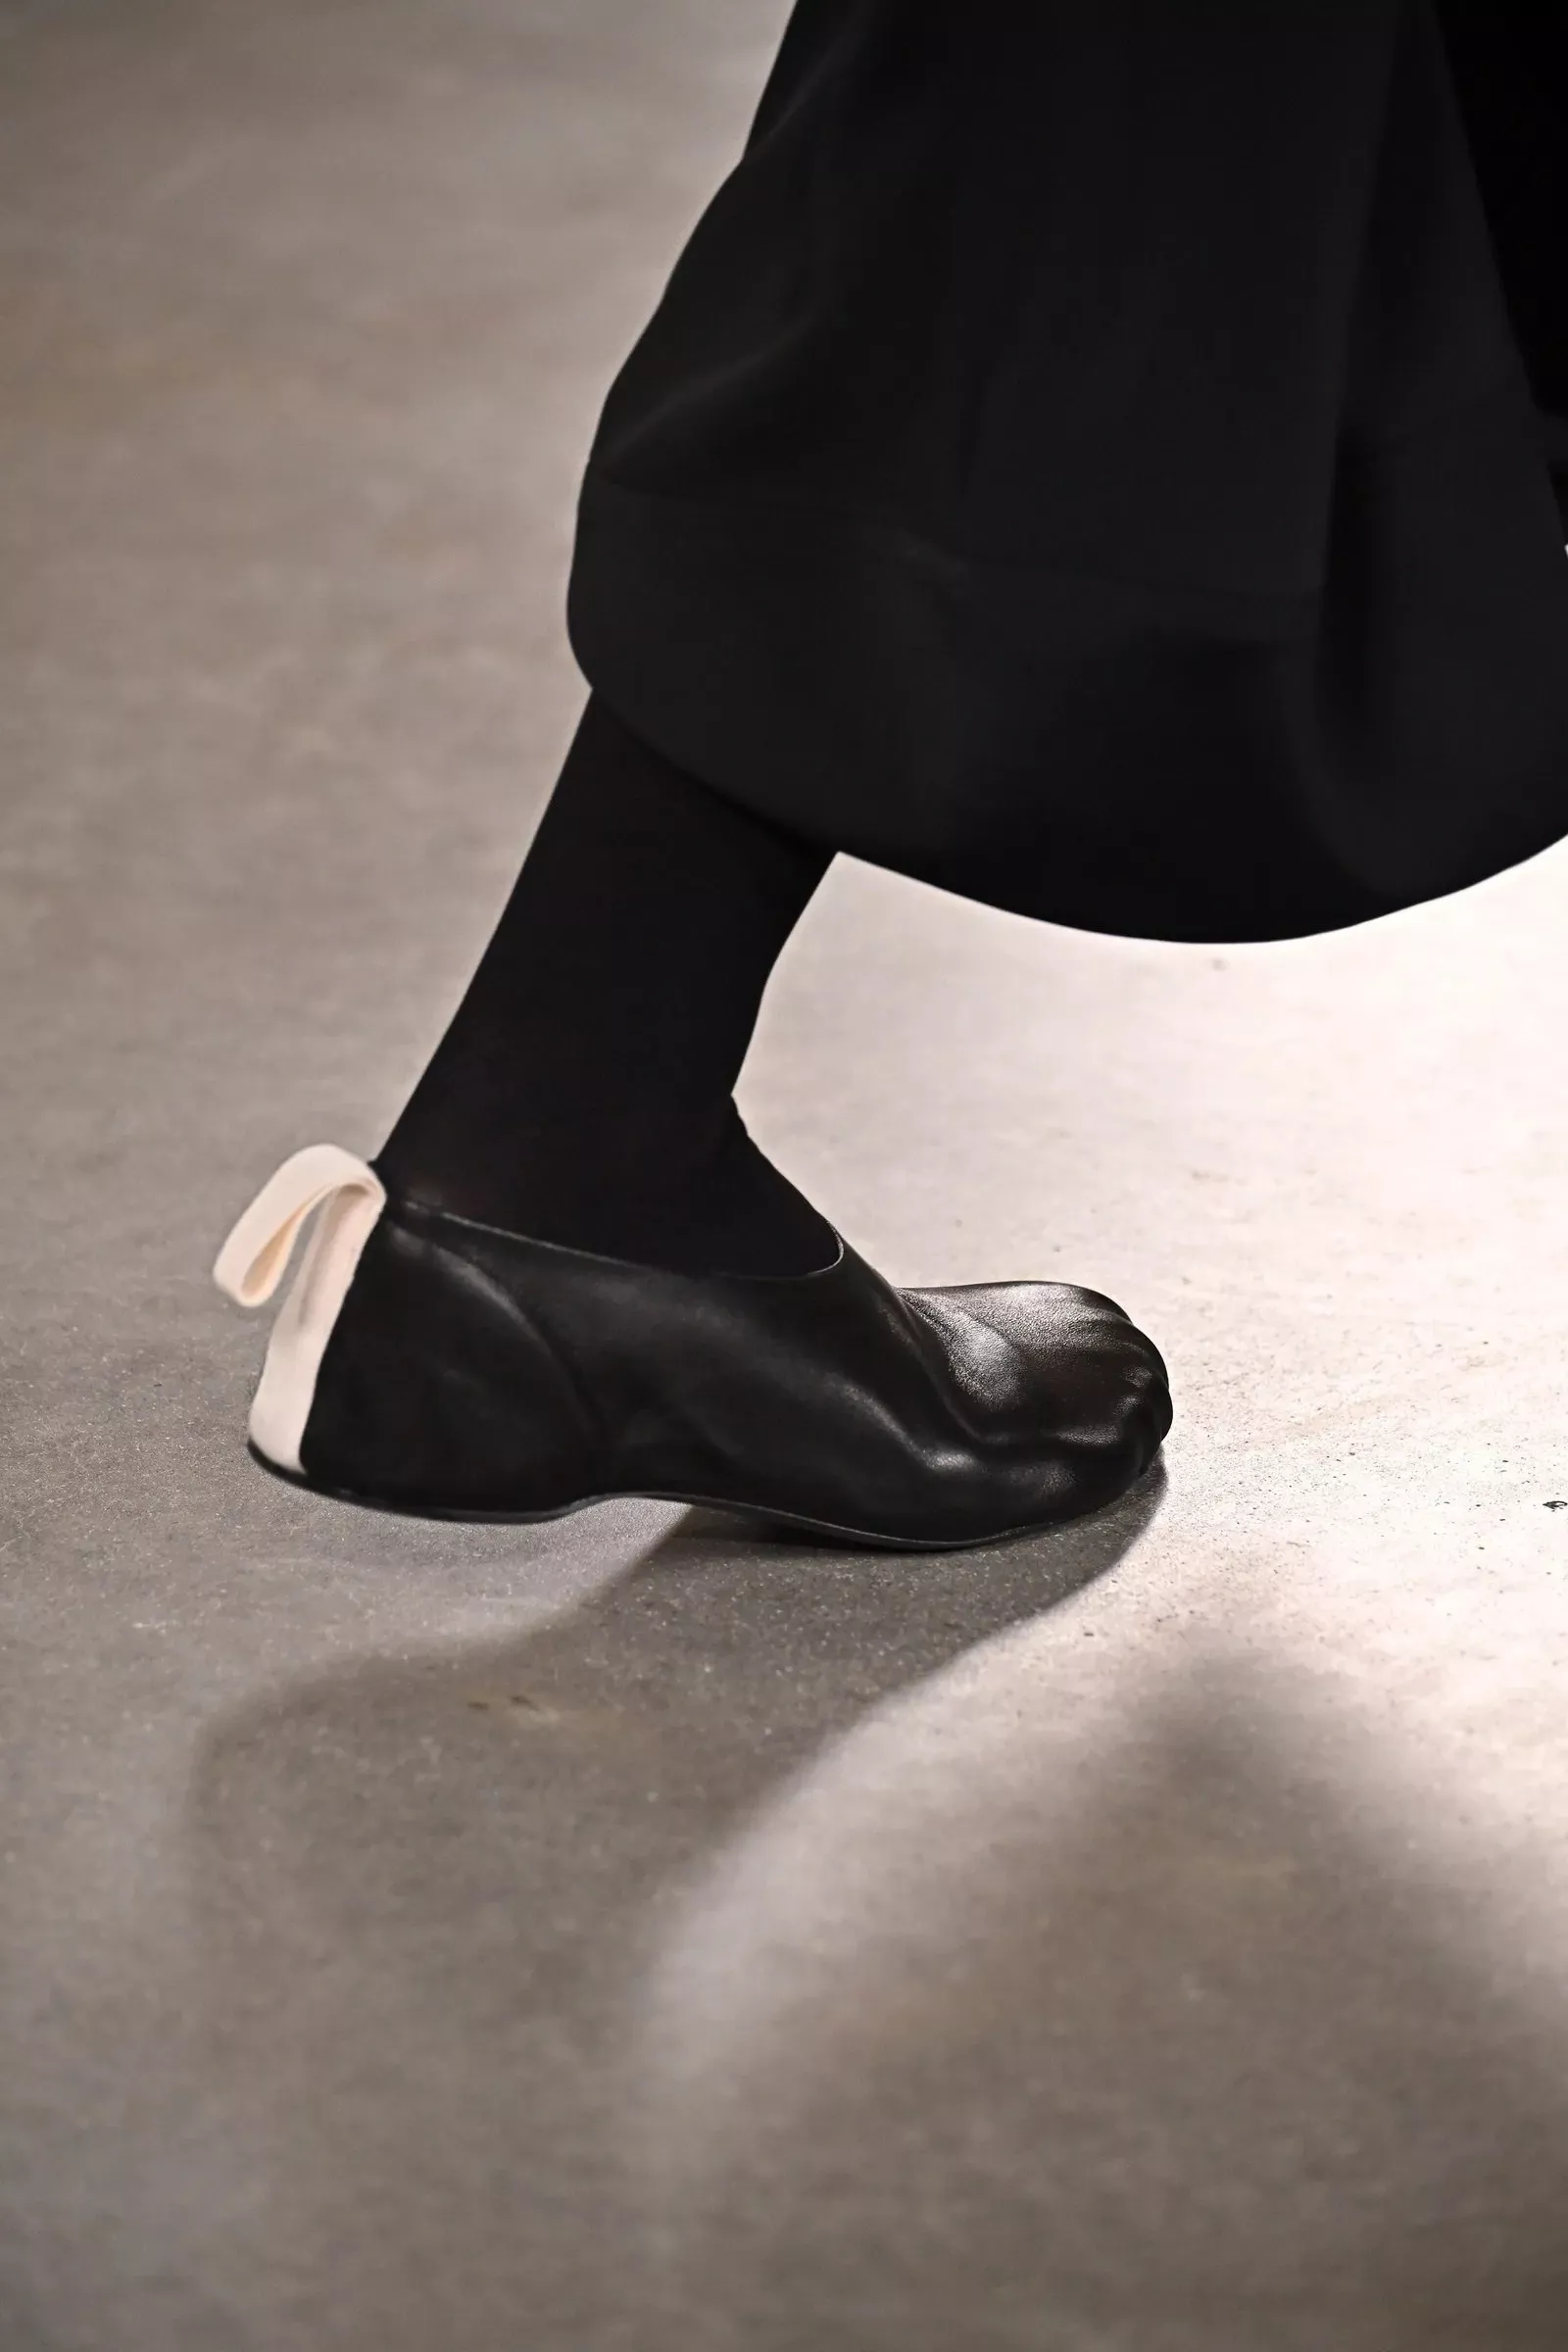 أشكال الأحذية الرائجة في خريف وشتاء 2022-2023... نعم للموديلات المبتكرة والمميّزة